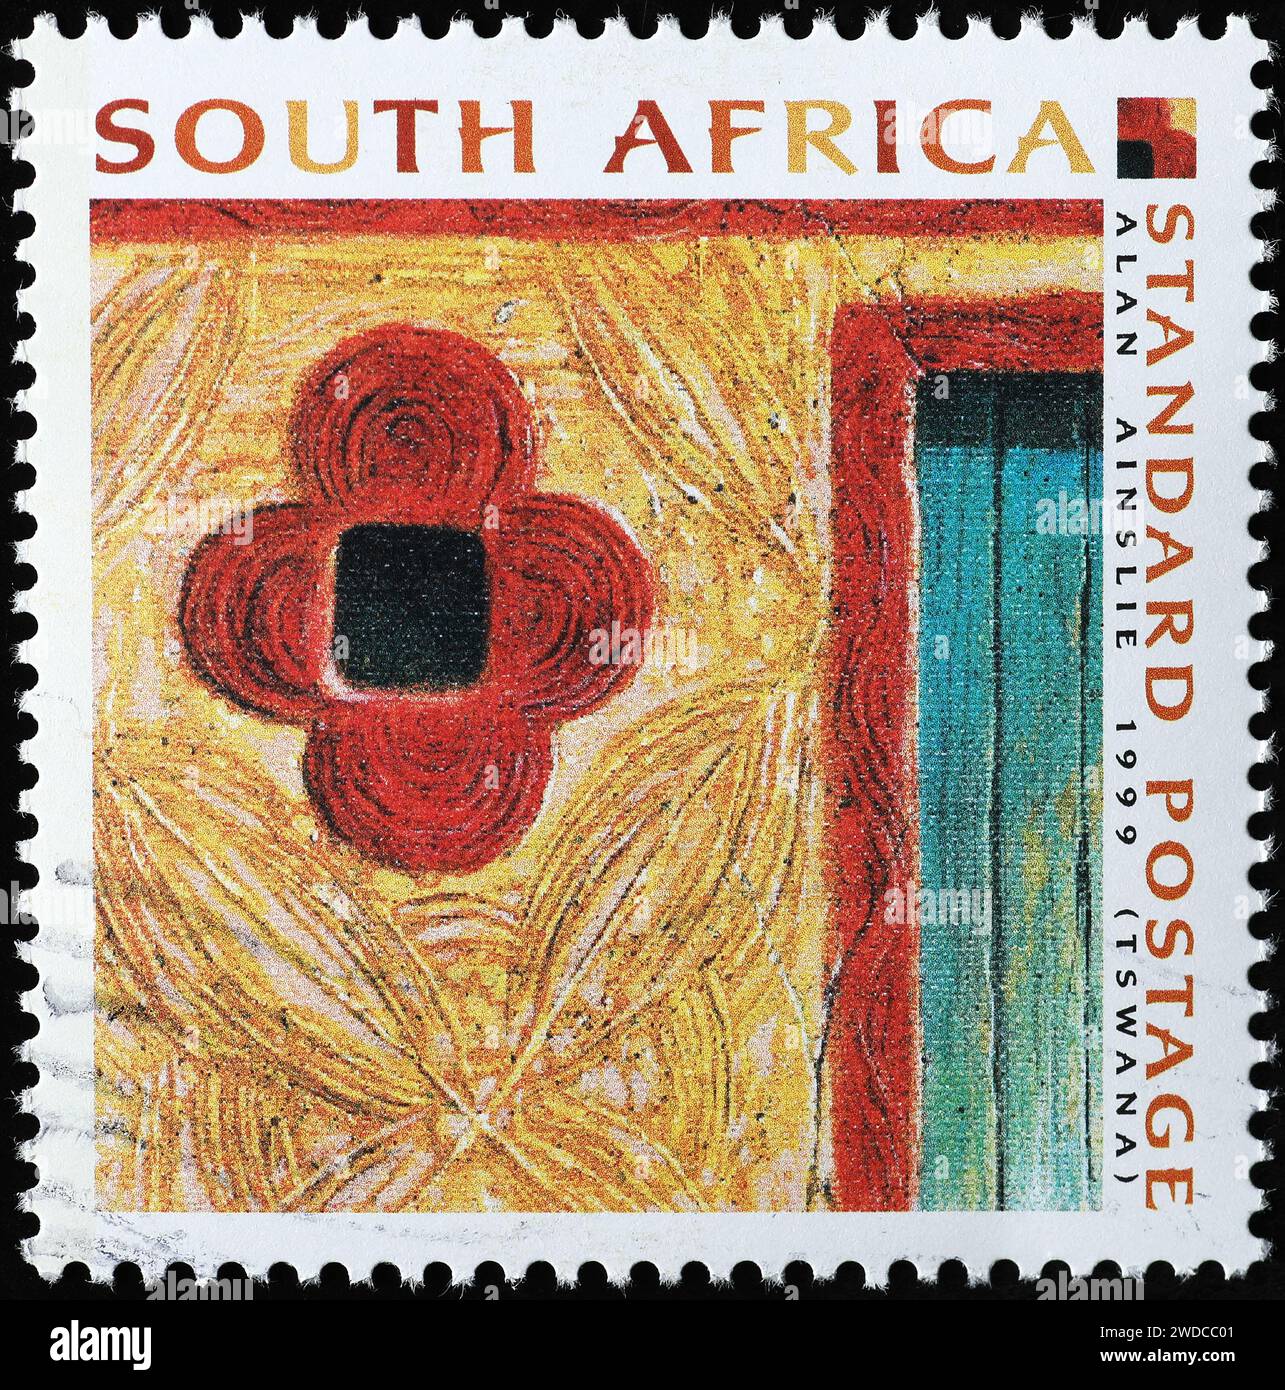 Couleurs et motifs sud-africains sur timbre-poste Banque D'Images